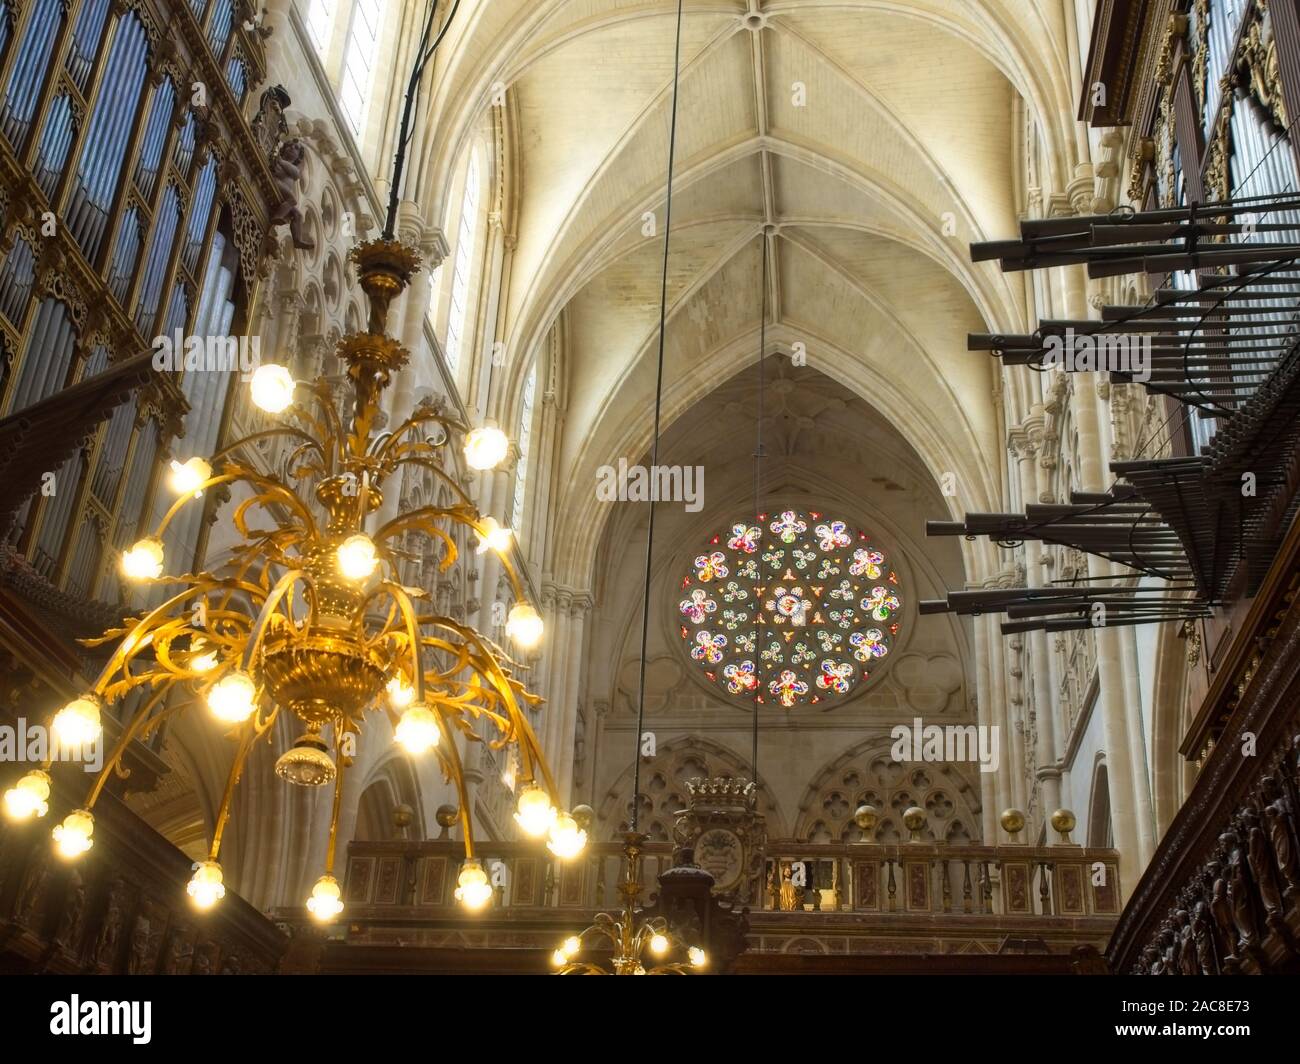 Burgos, Spain - May 4, 2019. Interior of the Cathedral of Santa María de Burgos. Spain Stock Photo